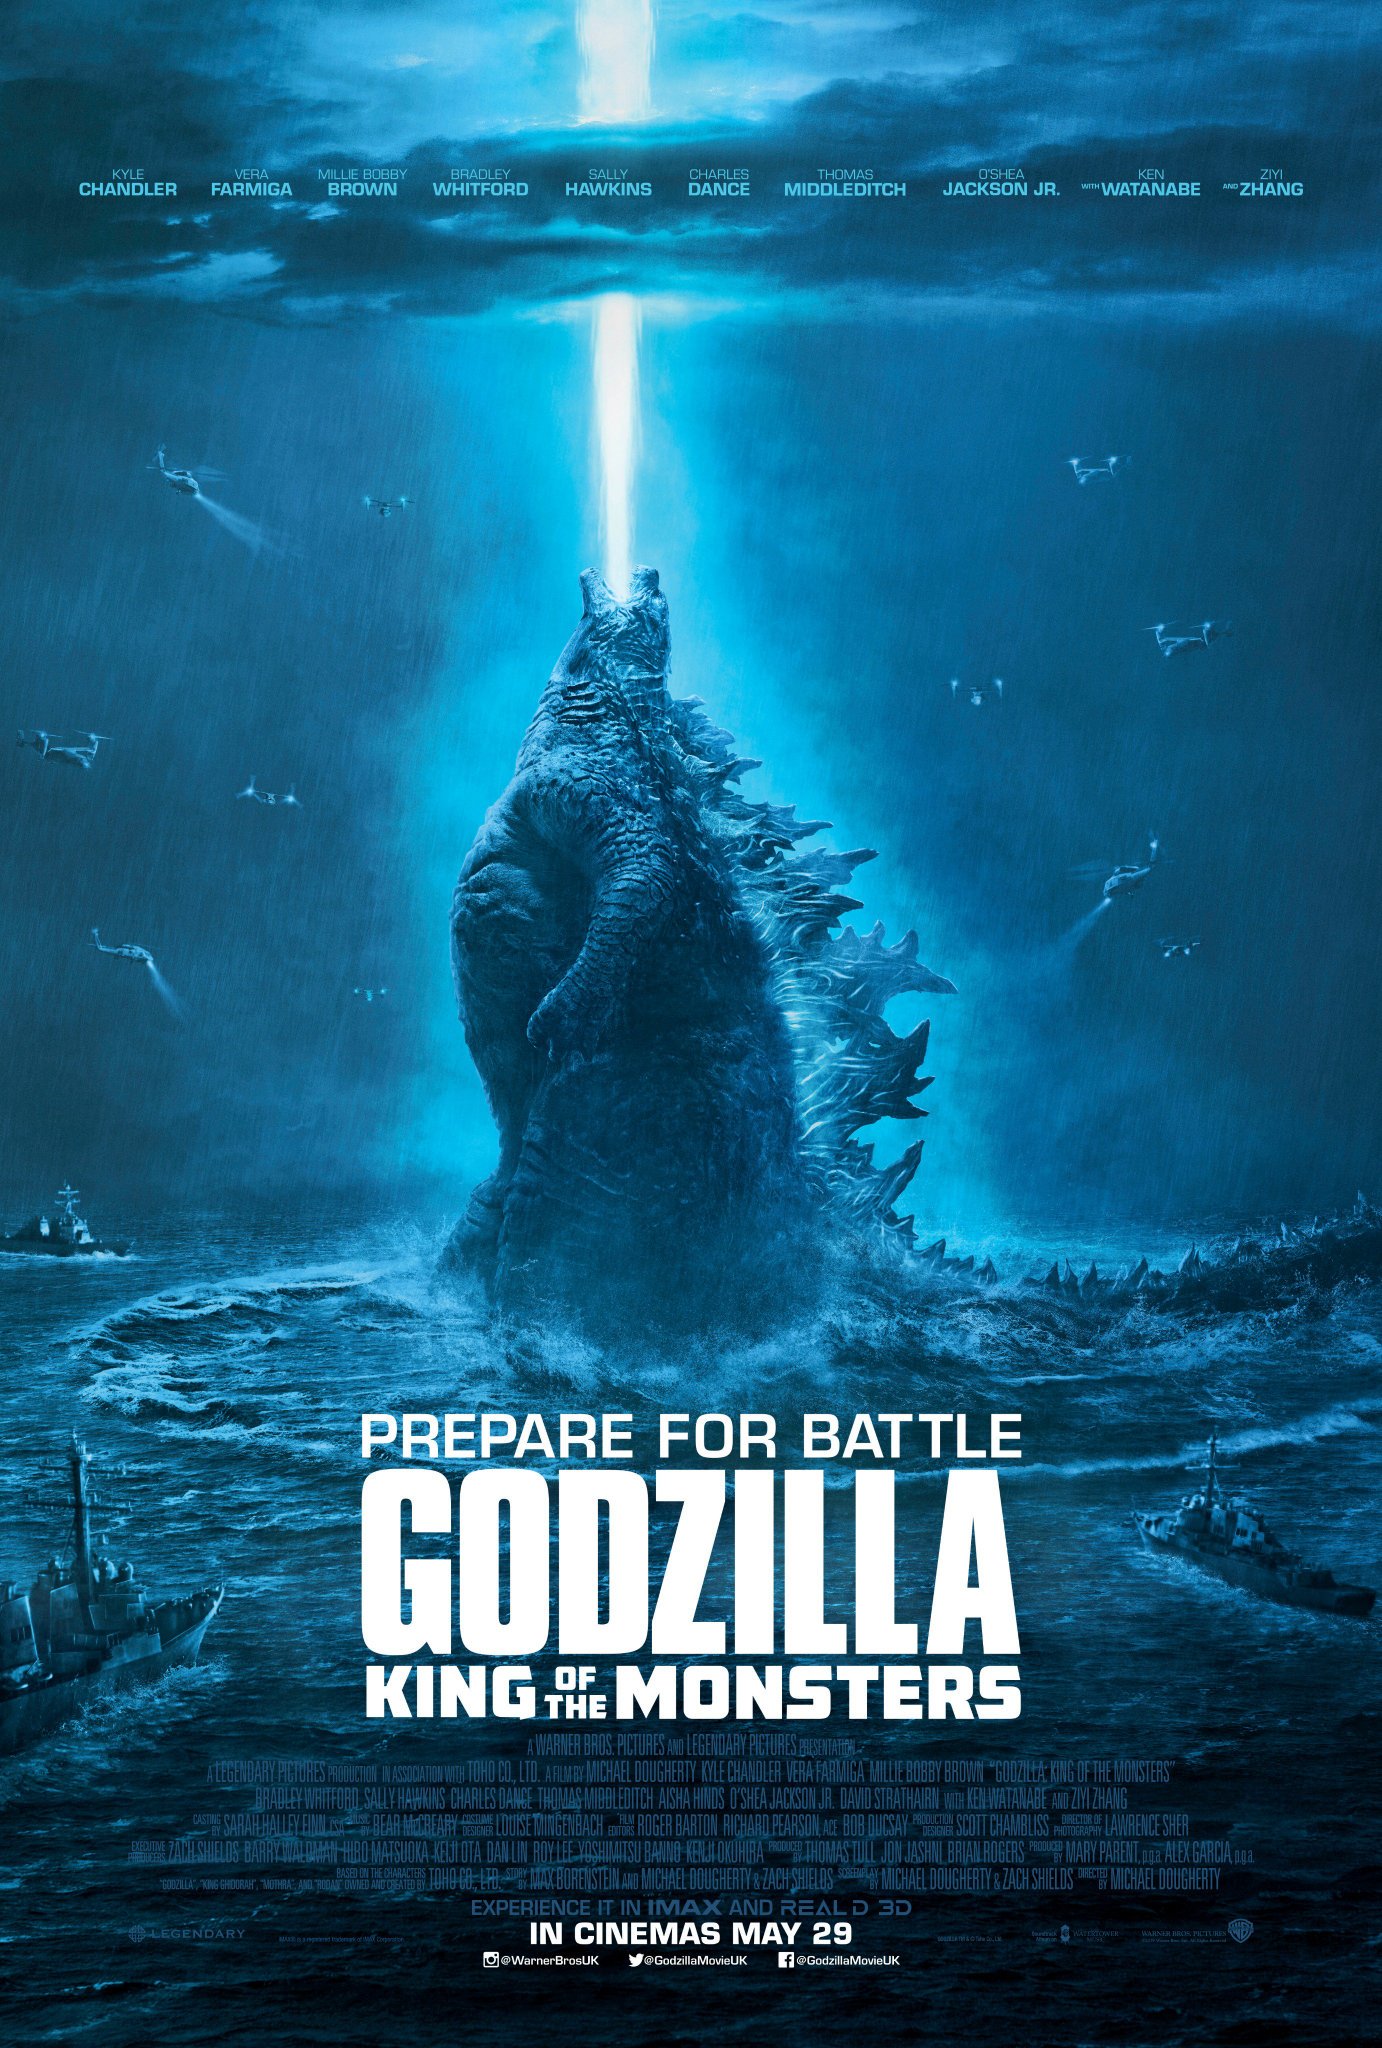 Godzilla 2 UK Poster (Godzilla 2 King of the Monsters Image Gallery)